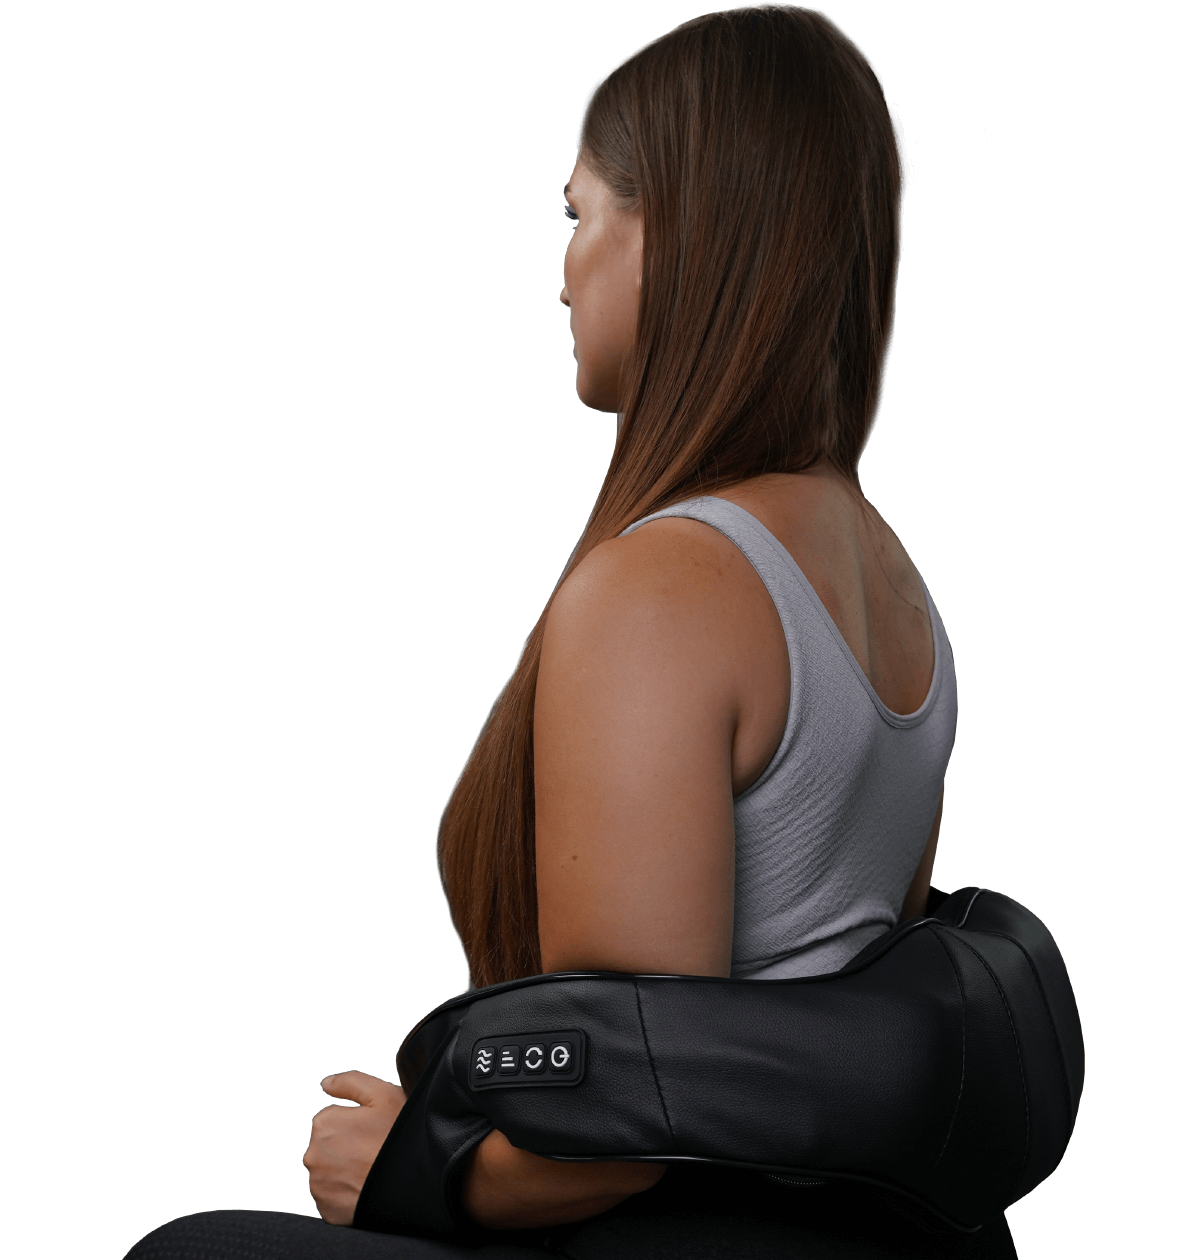 UVI Heka Shiatsu shoulder massager